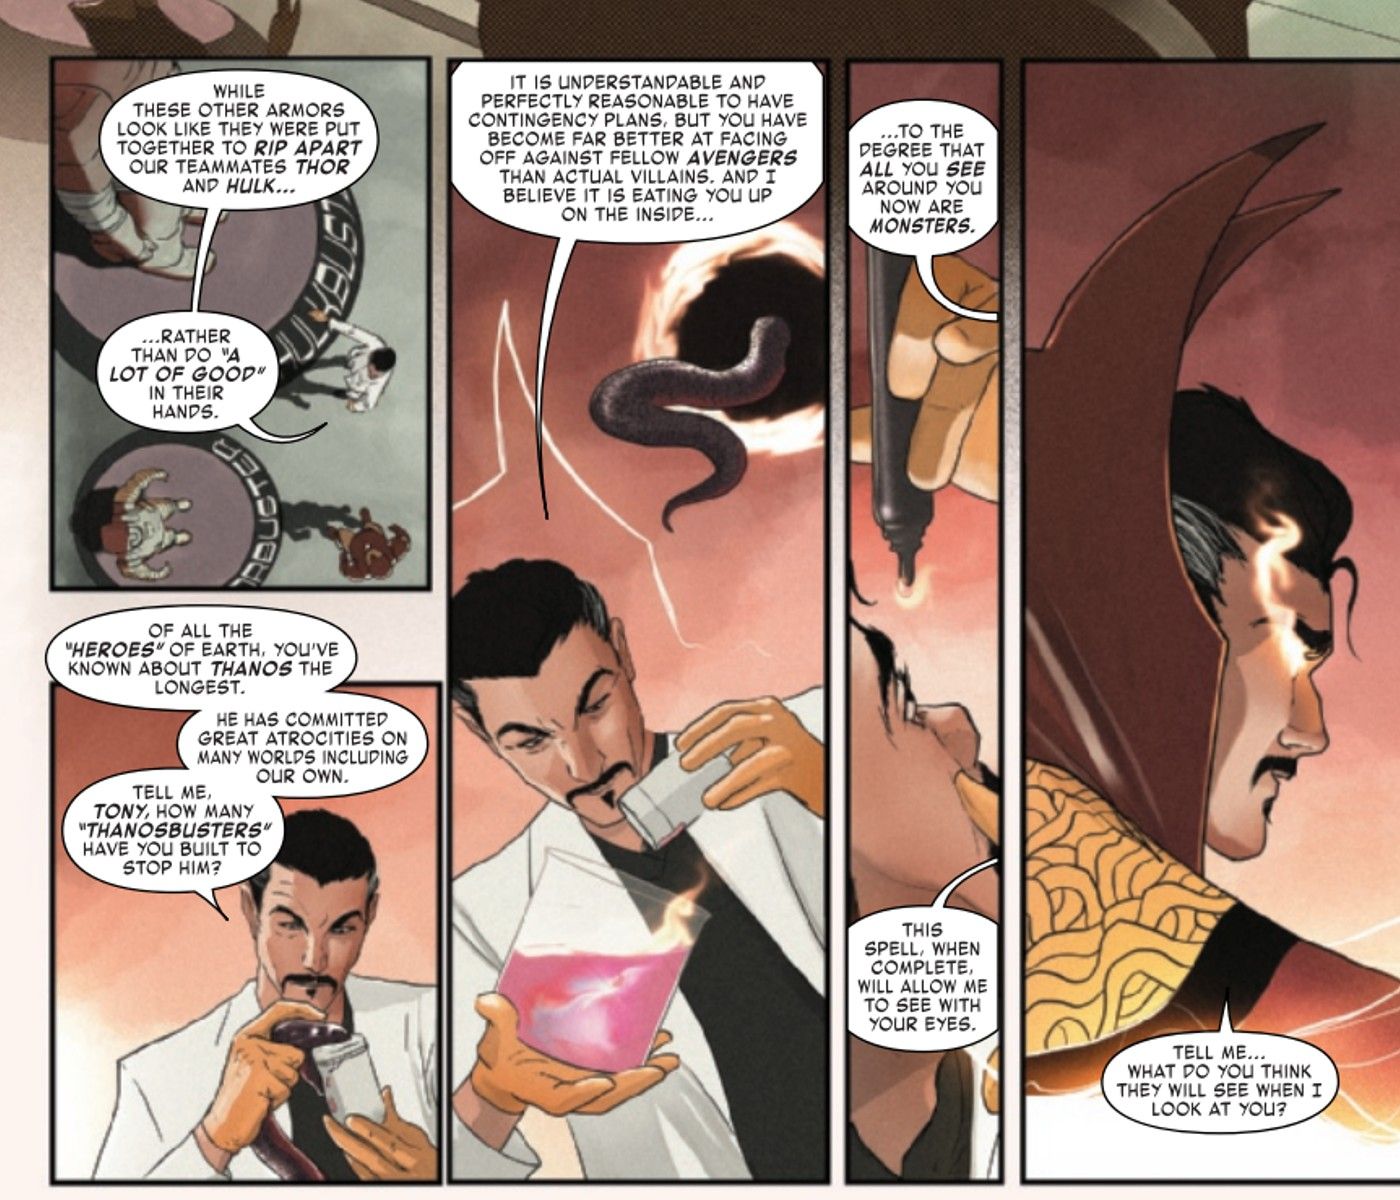 Doctor Strange tells Iron Man he sees monsters